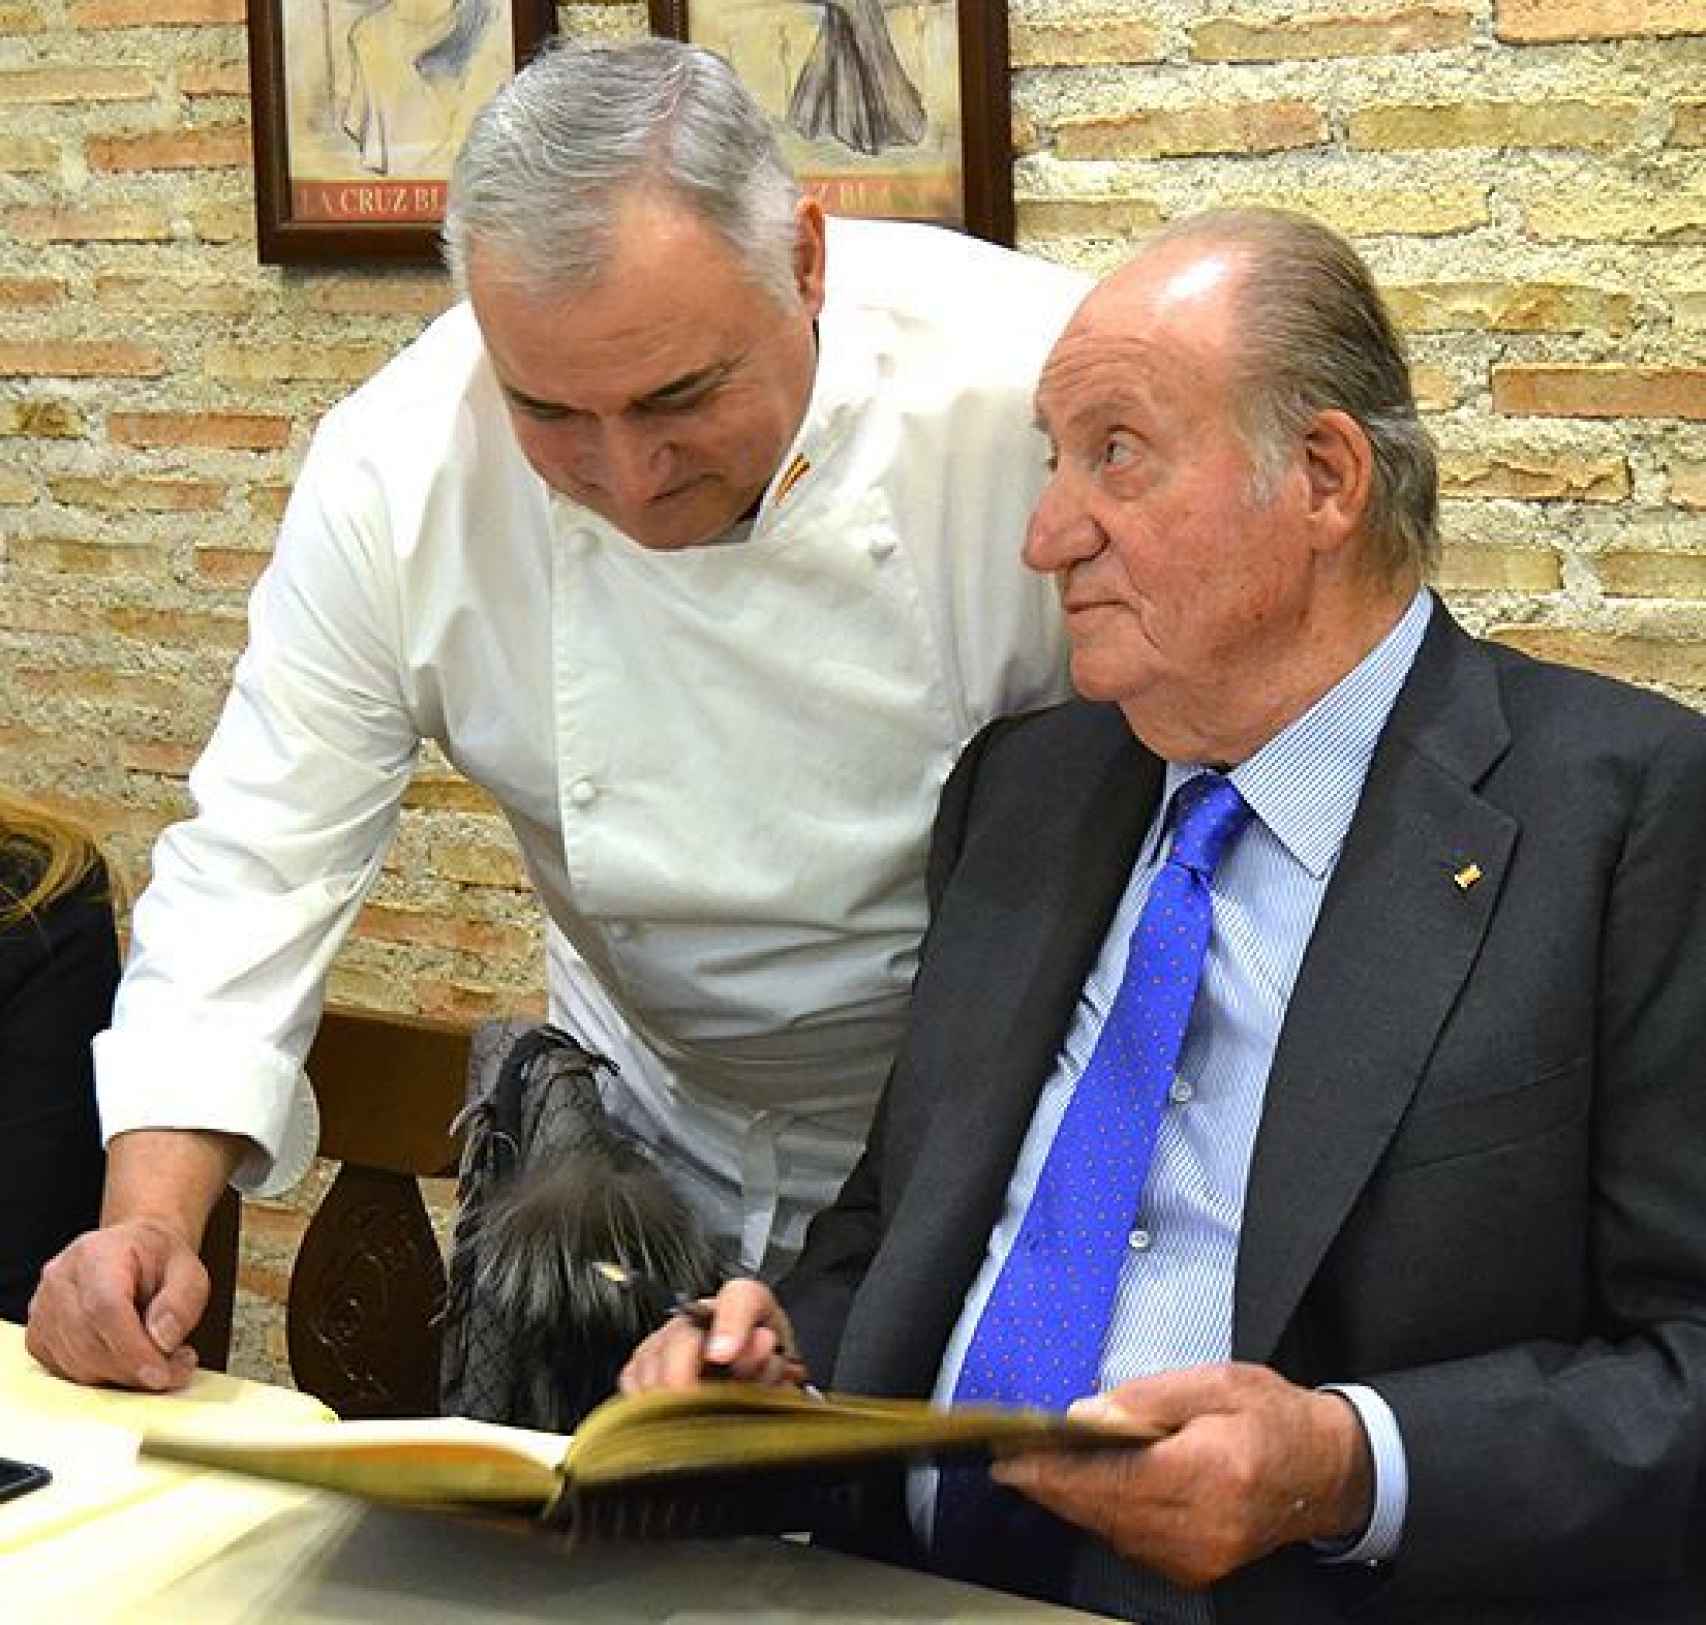 El rey Juan Carlos firma en el libro de honor ante la presencia de Antonio Cosmen.